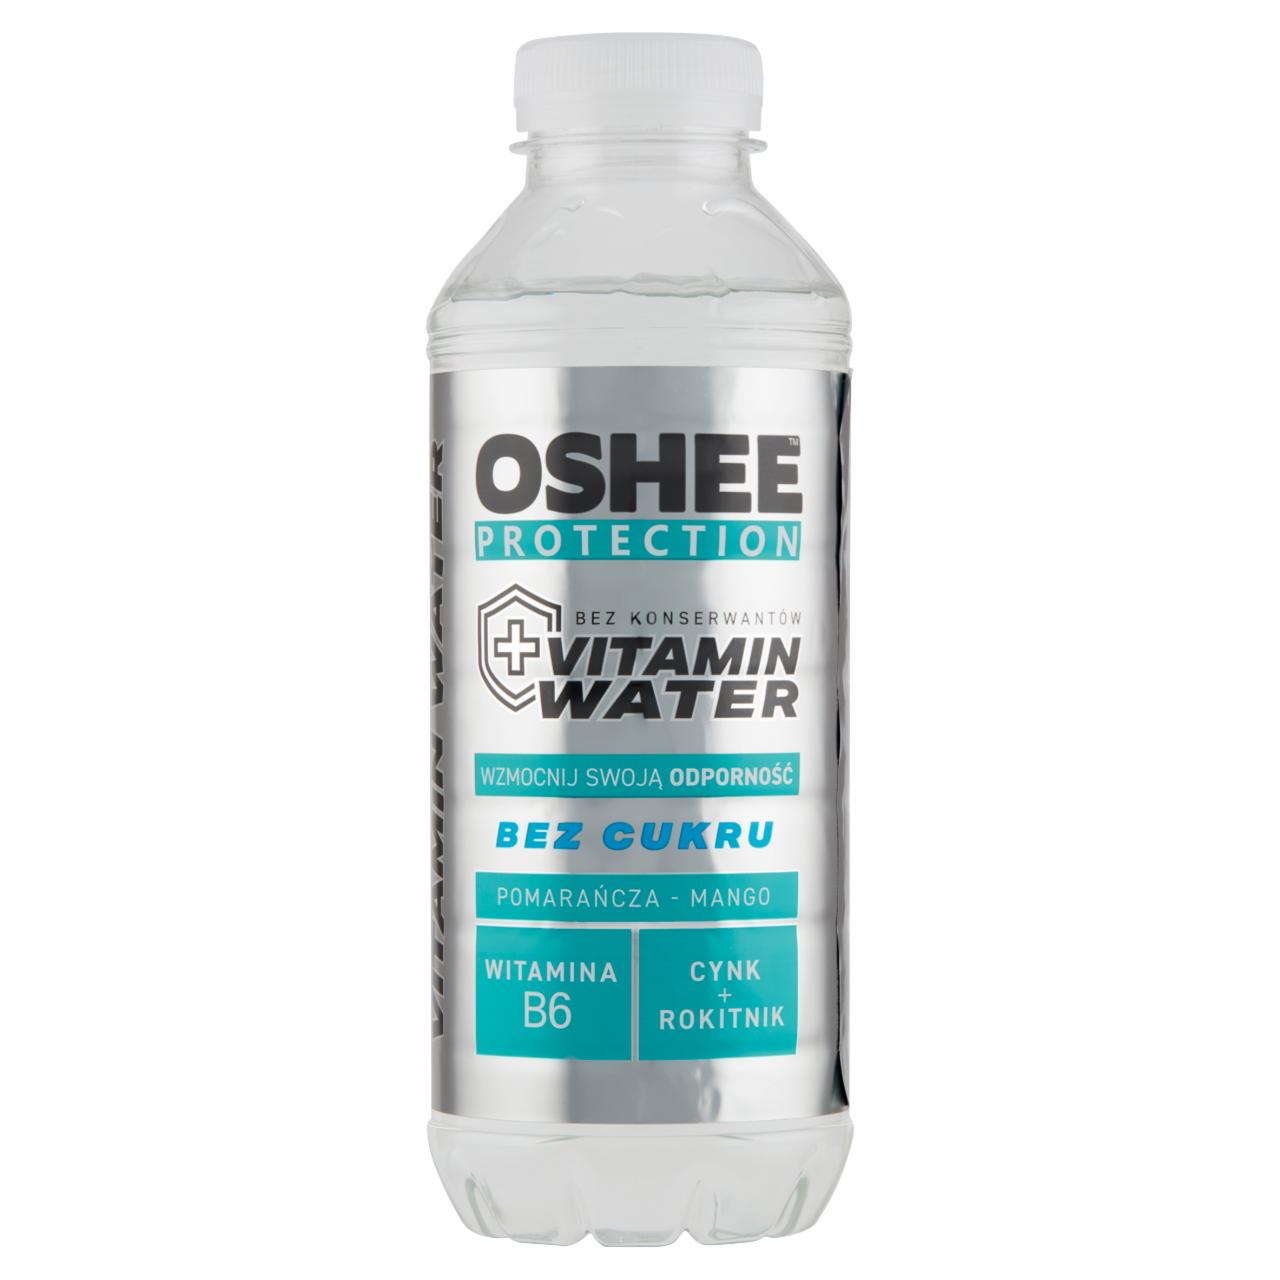 Zdjęcia - Oshee Protection Vitamin Water Napój niegazowany pomarańcza-mango 555 ml